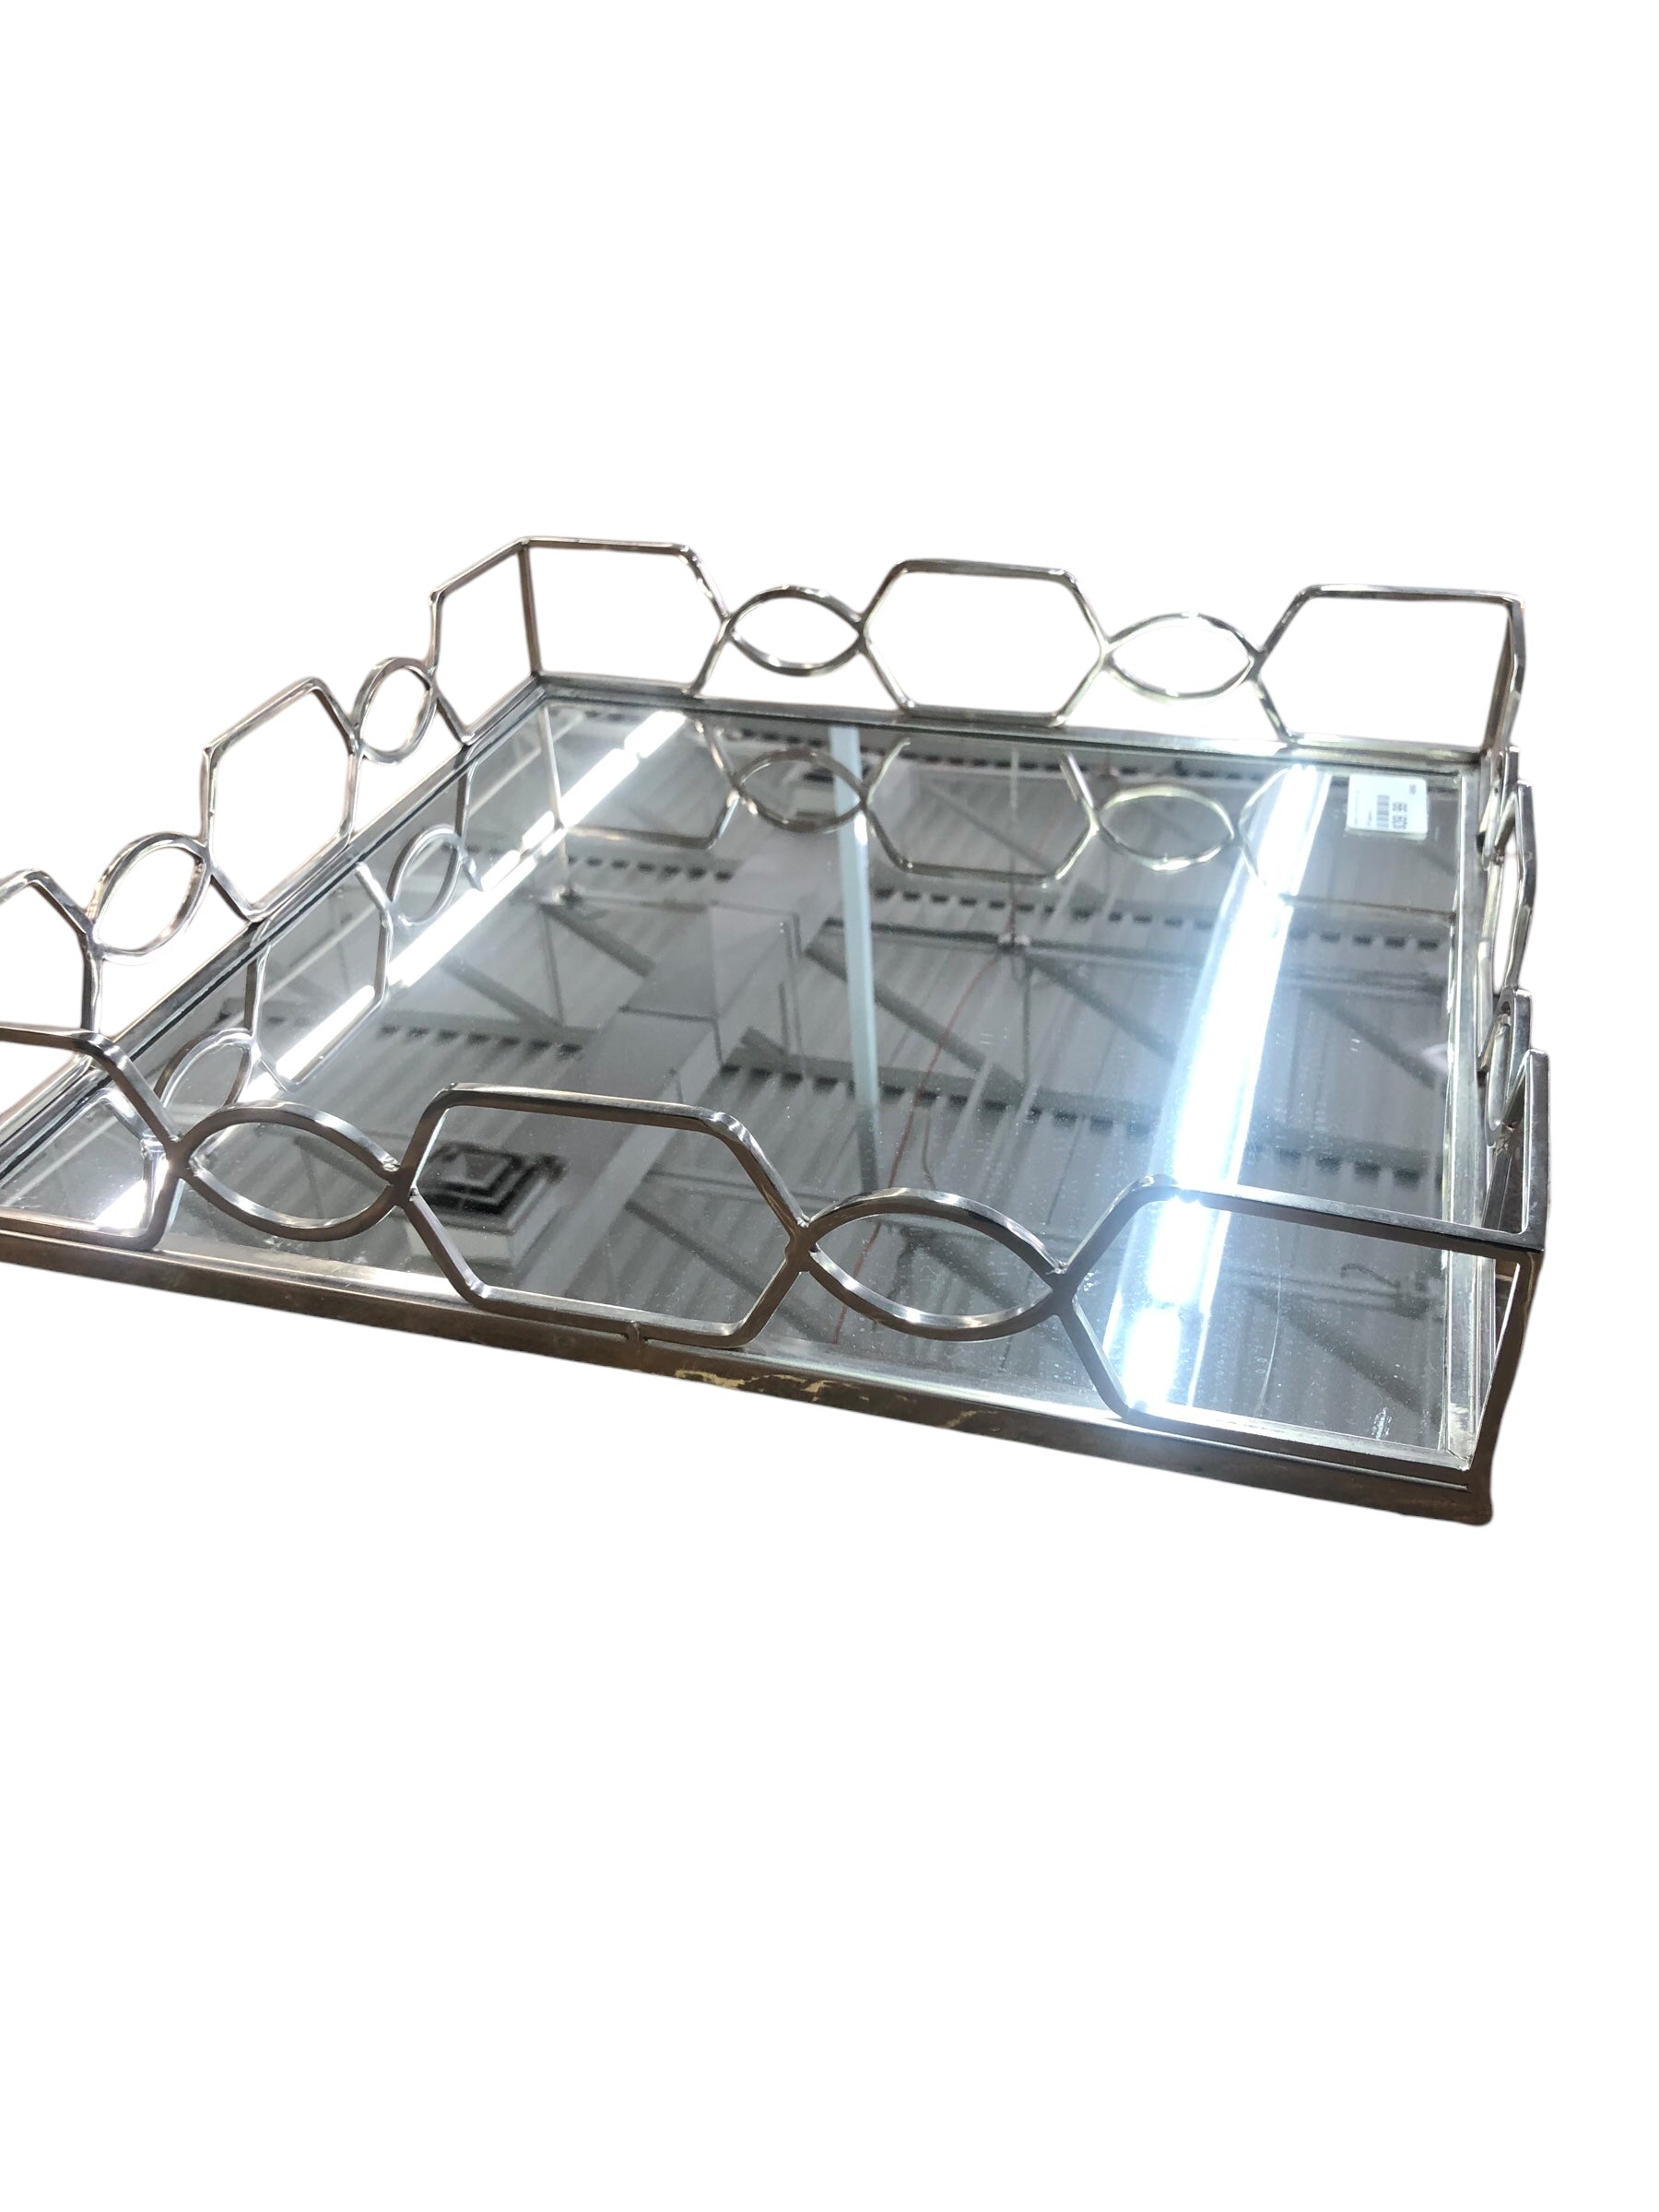 Square silver/mirror tray